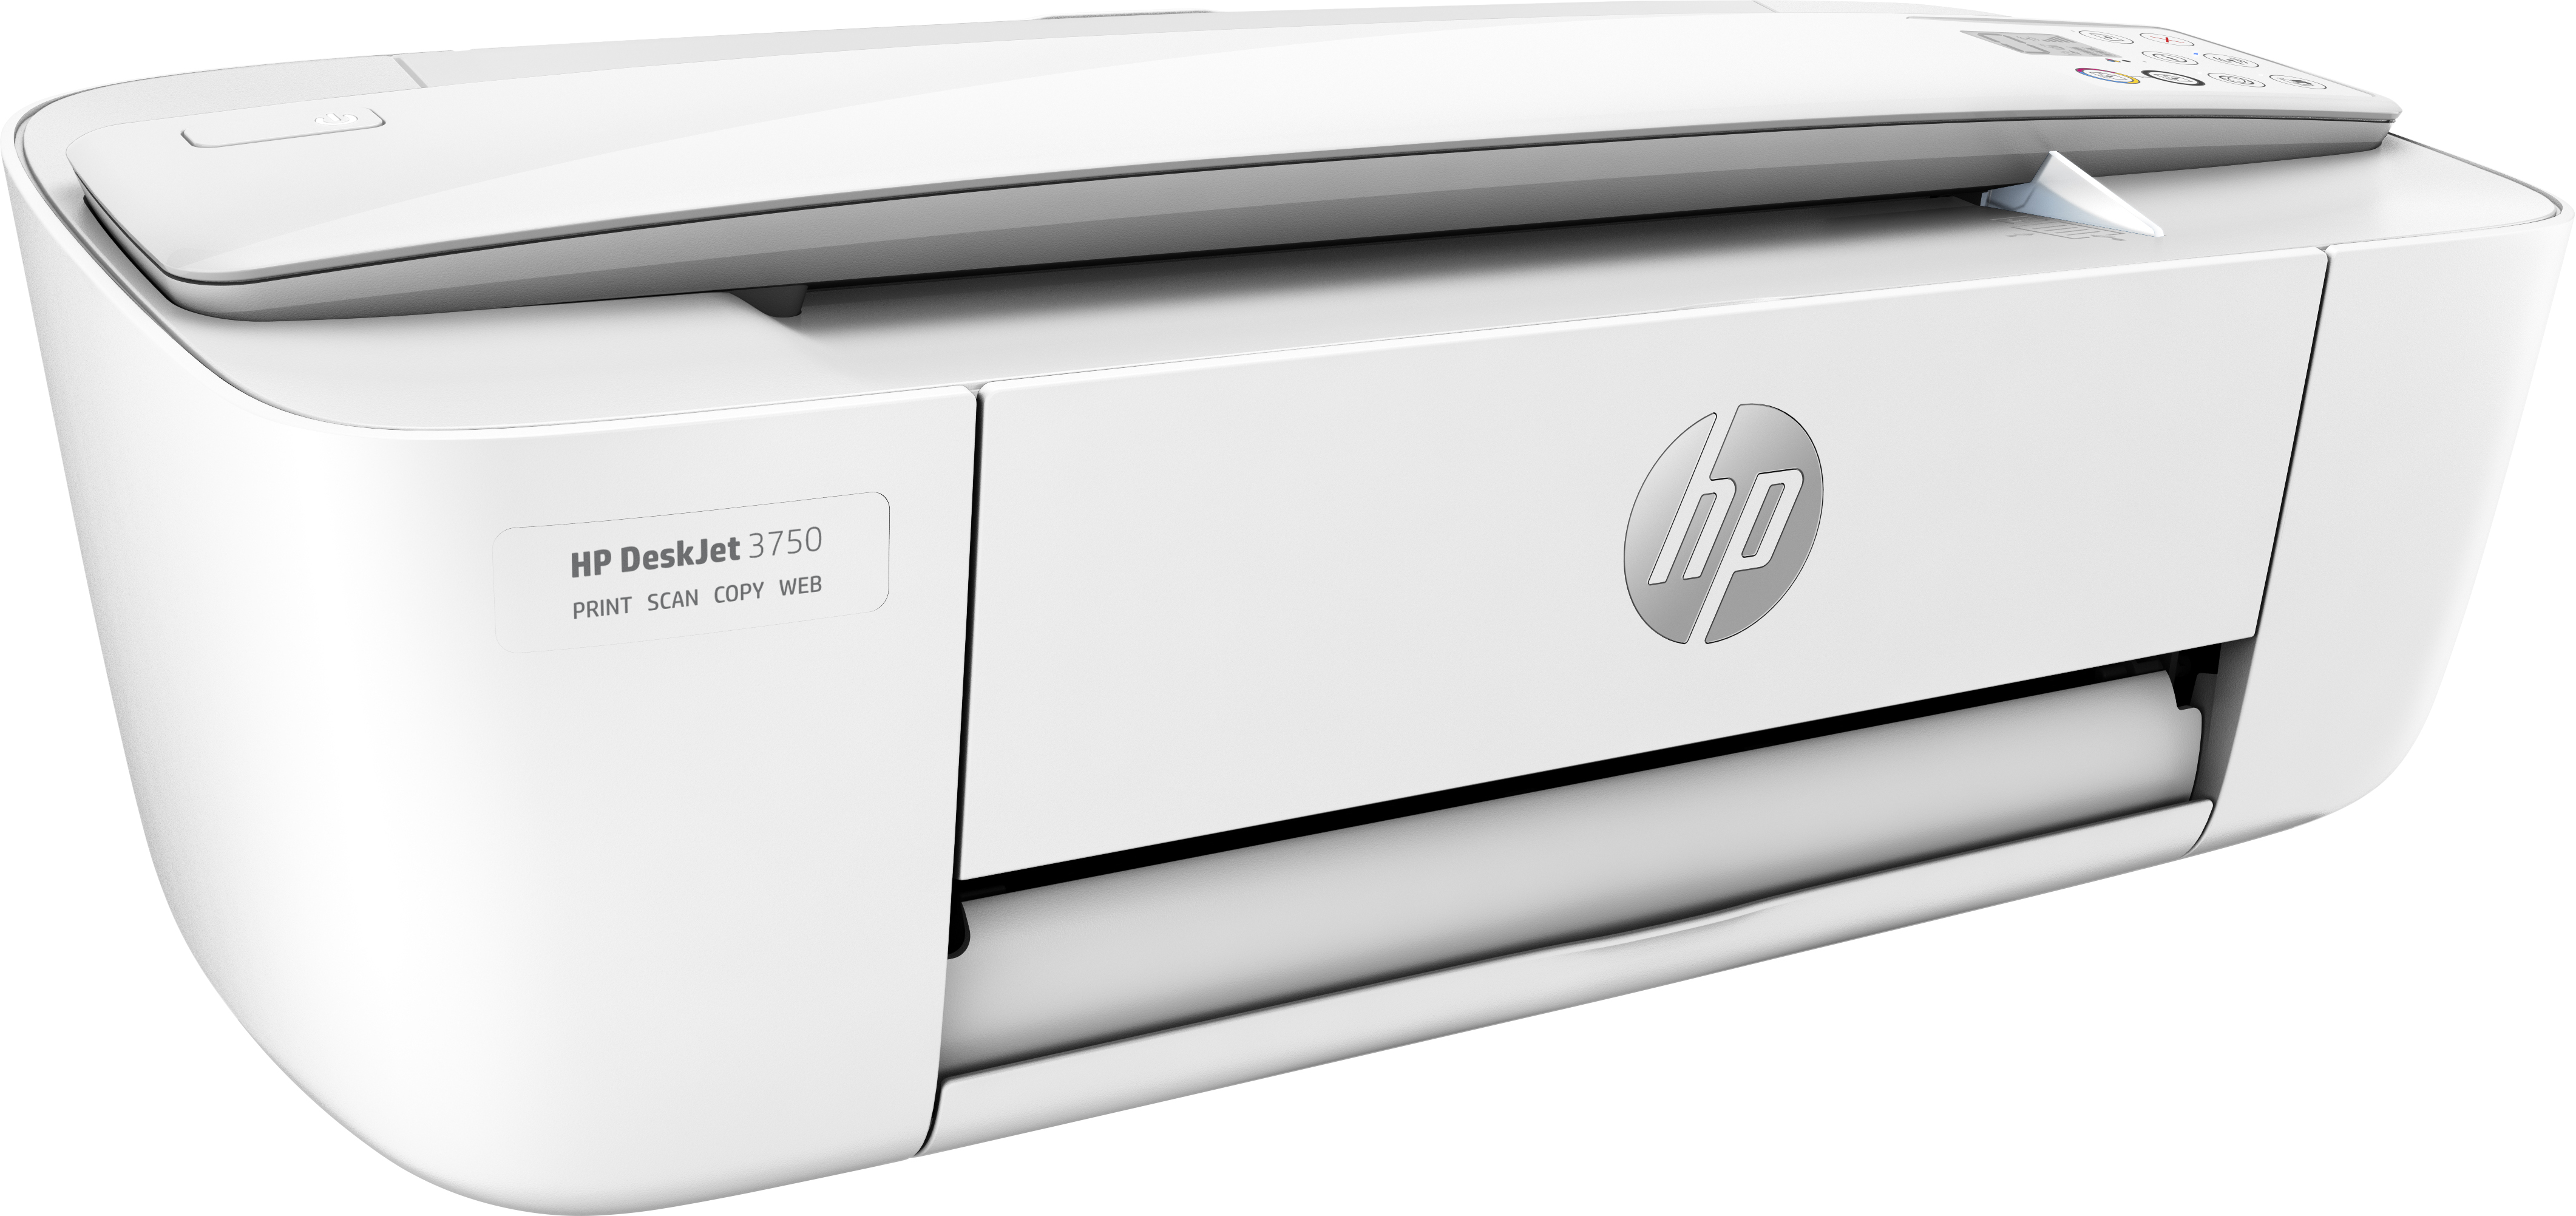 HP Tinte Deskjet Multifunktionsgeräte und Drucker WLAN 3750